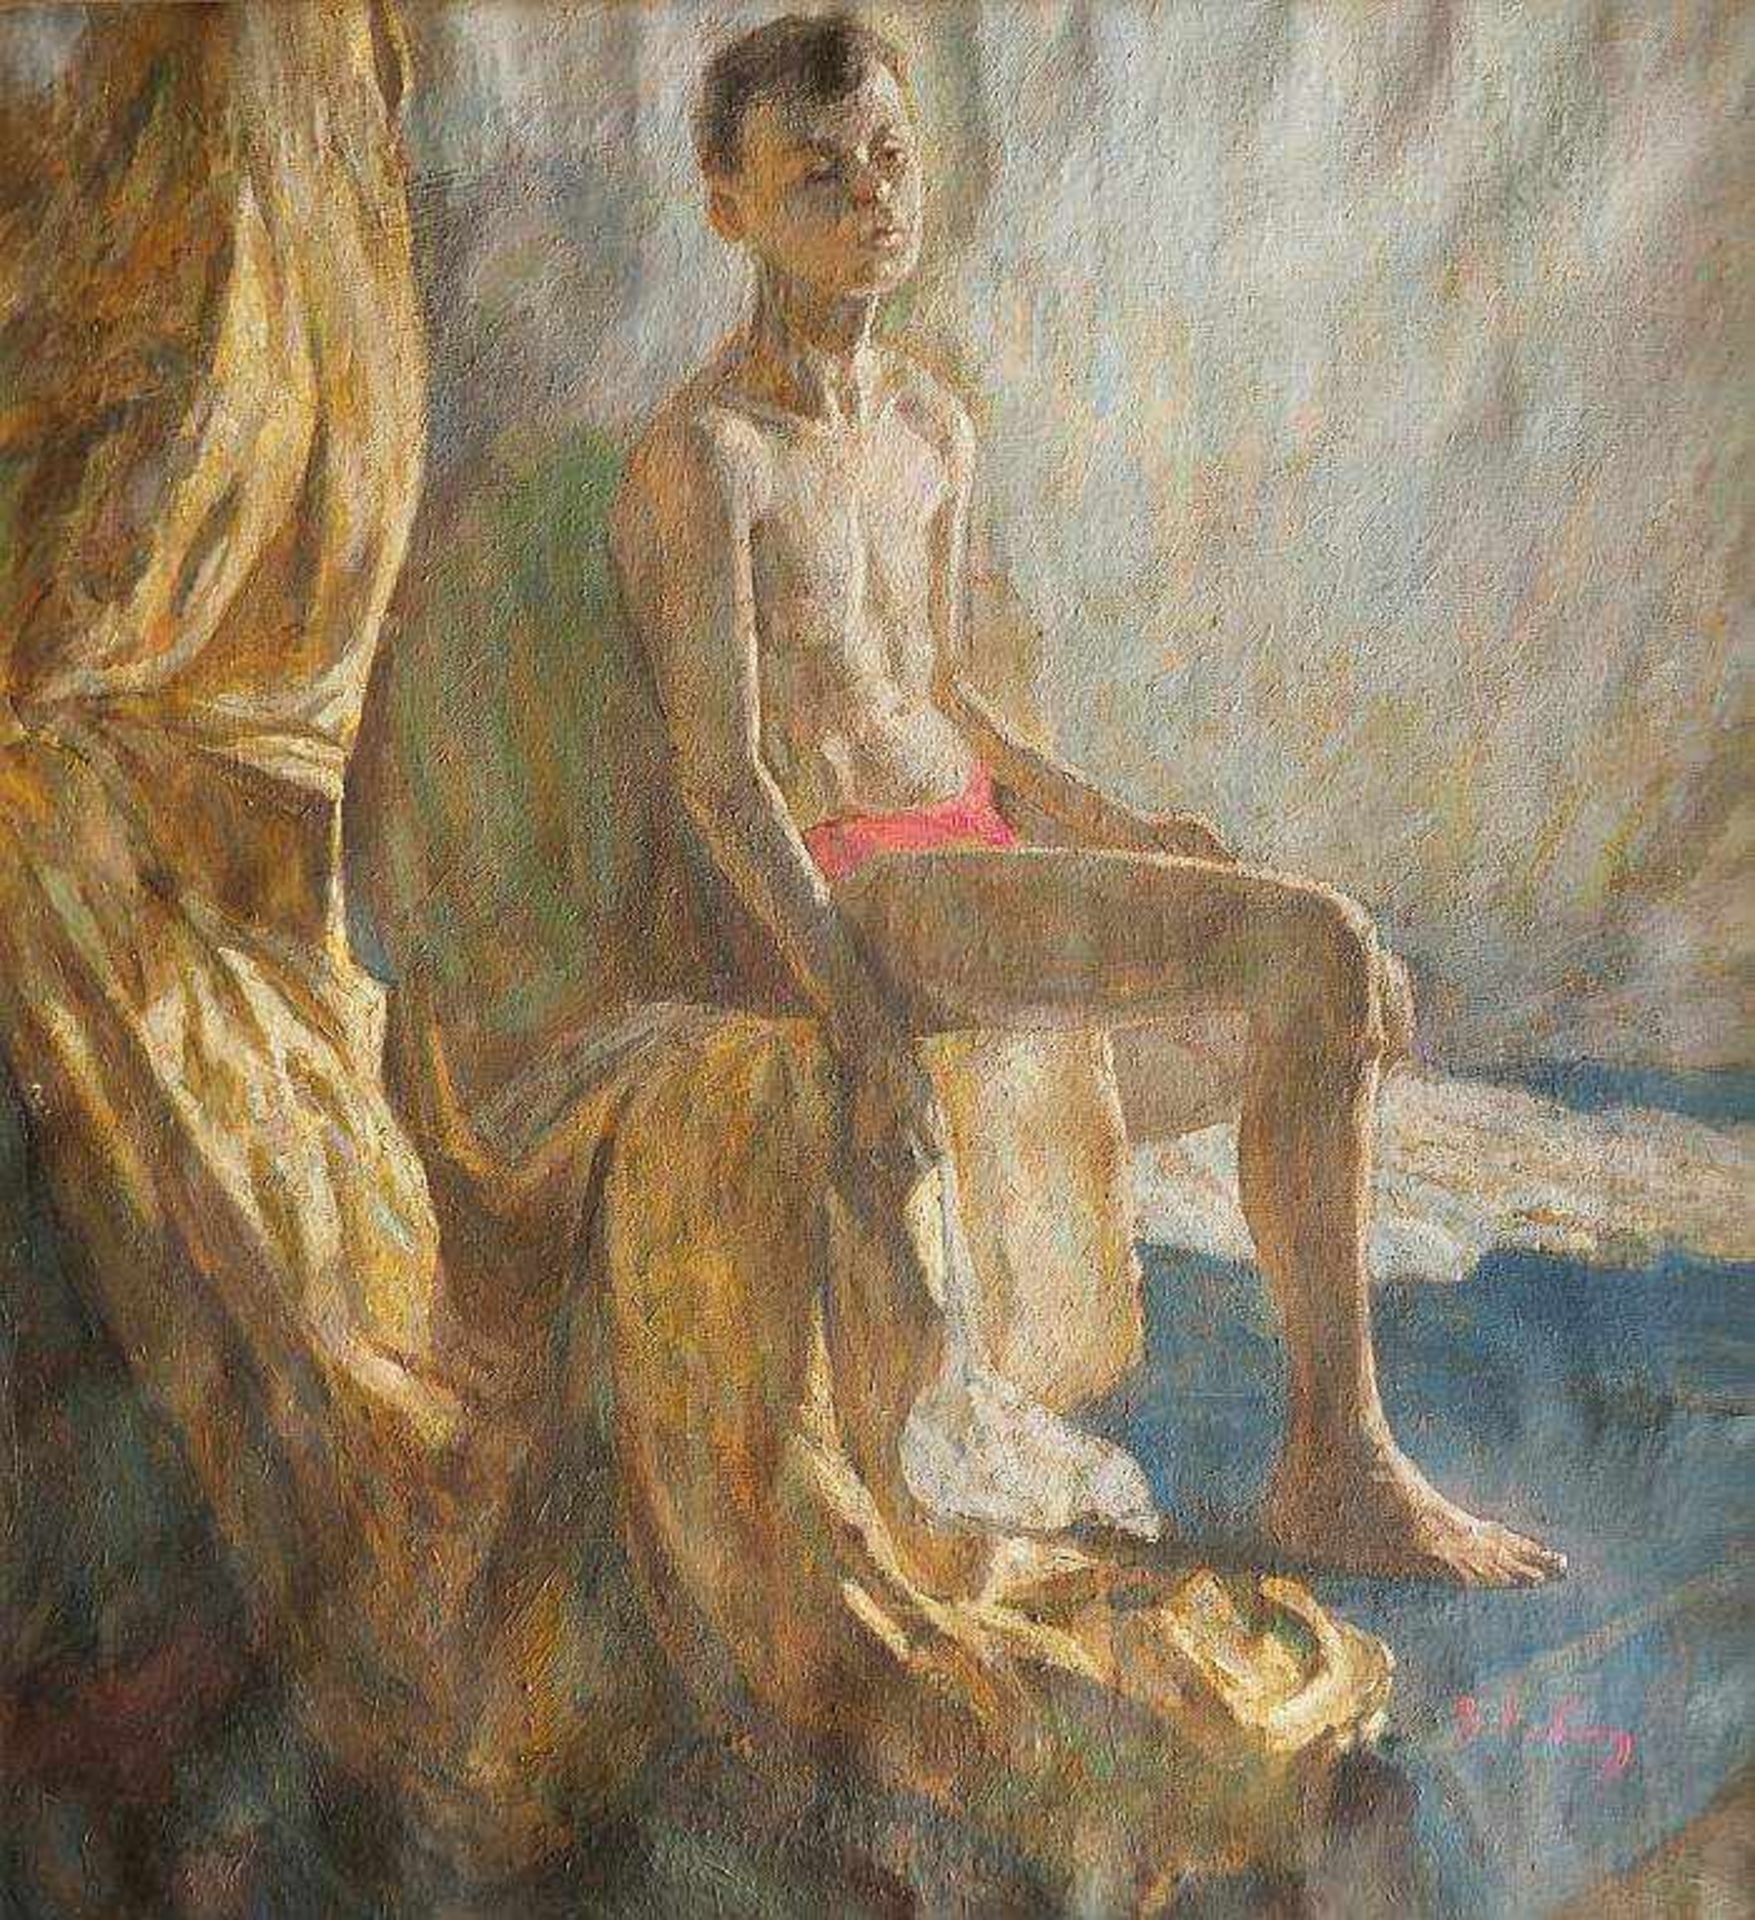 RYABININ, Vasily Borisovich. RYABININ, Vasily Borisovich. 1915 - 2000. Porträt eines sitzenden